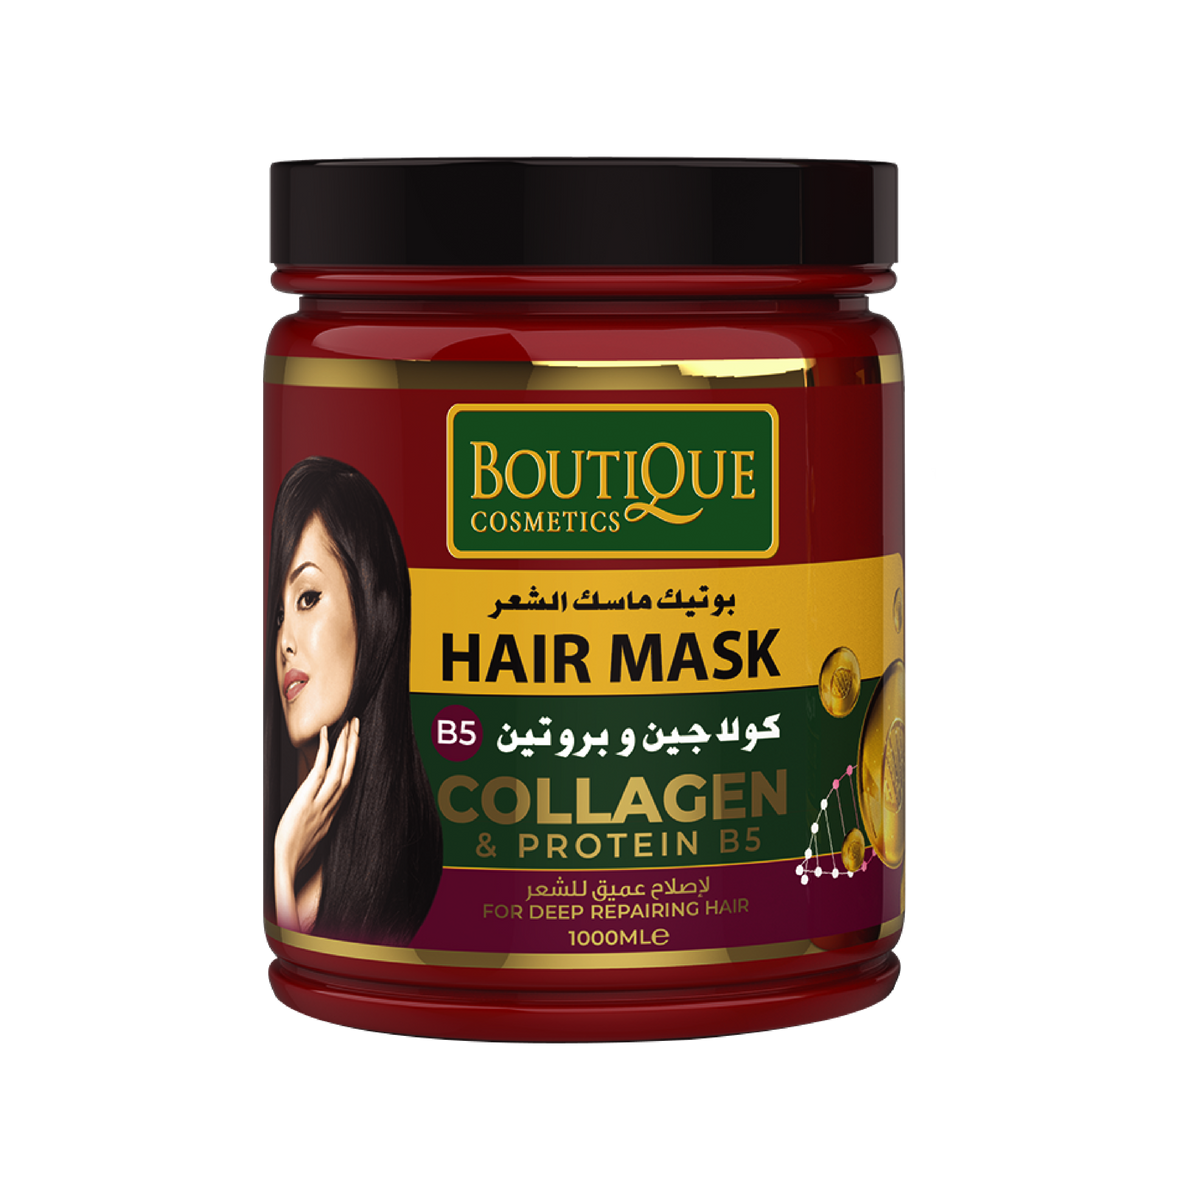 Restorative Collagen & Protein B5 Hair Mask - 1000ml